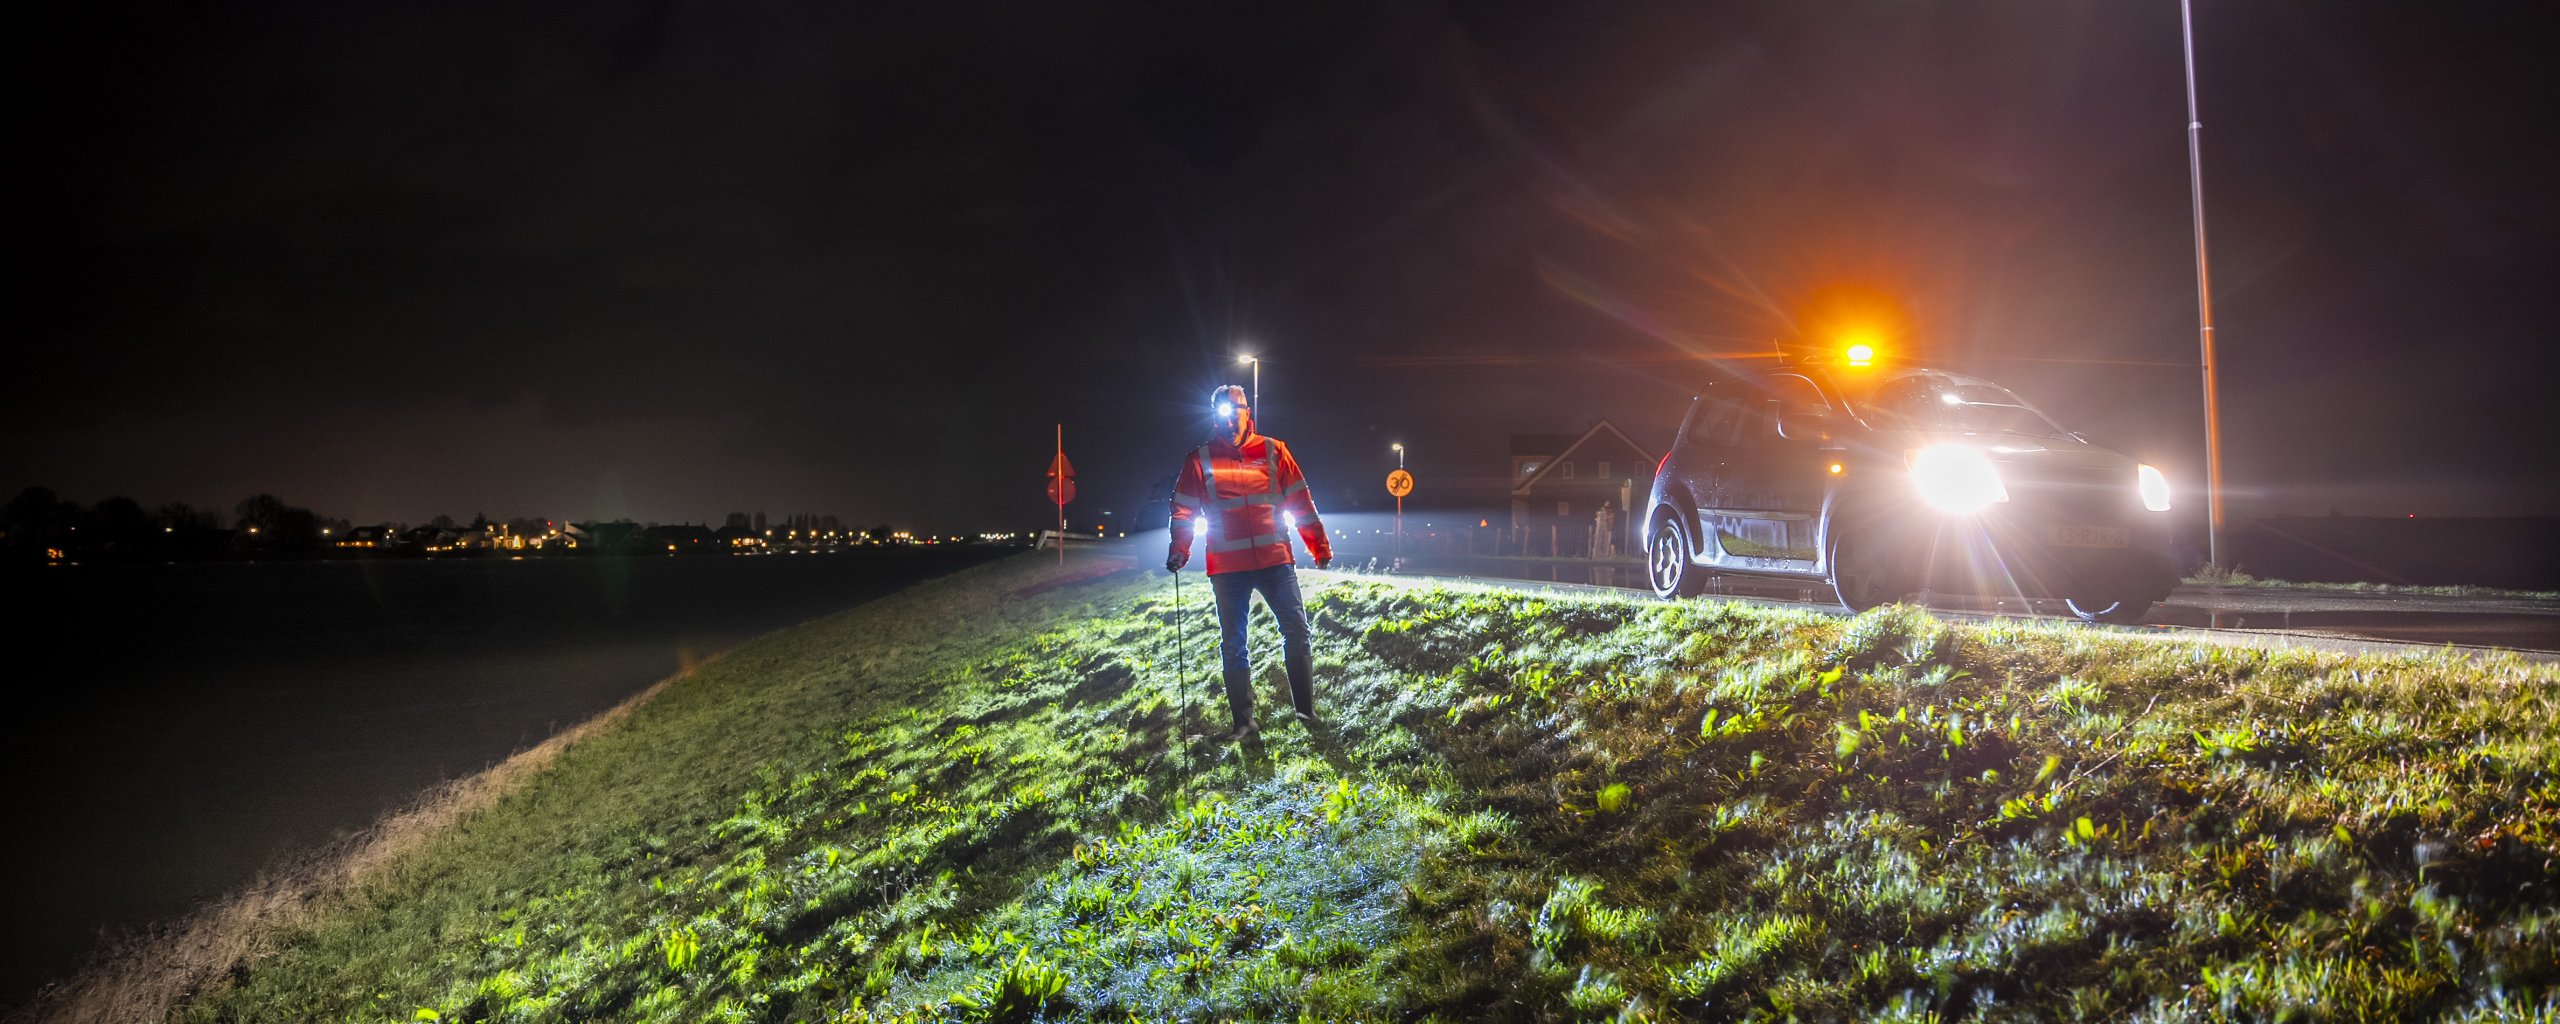 Dijkbeheerders Ad en Adrie zijn op pad geweest om de dijken tussen Gorinchem en Nieuwpoort te inspecteren. 